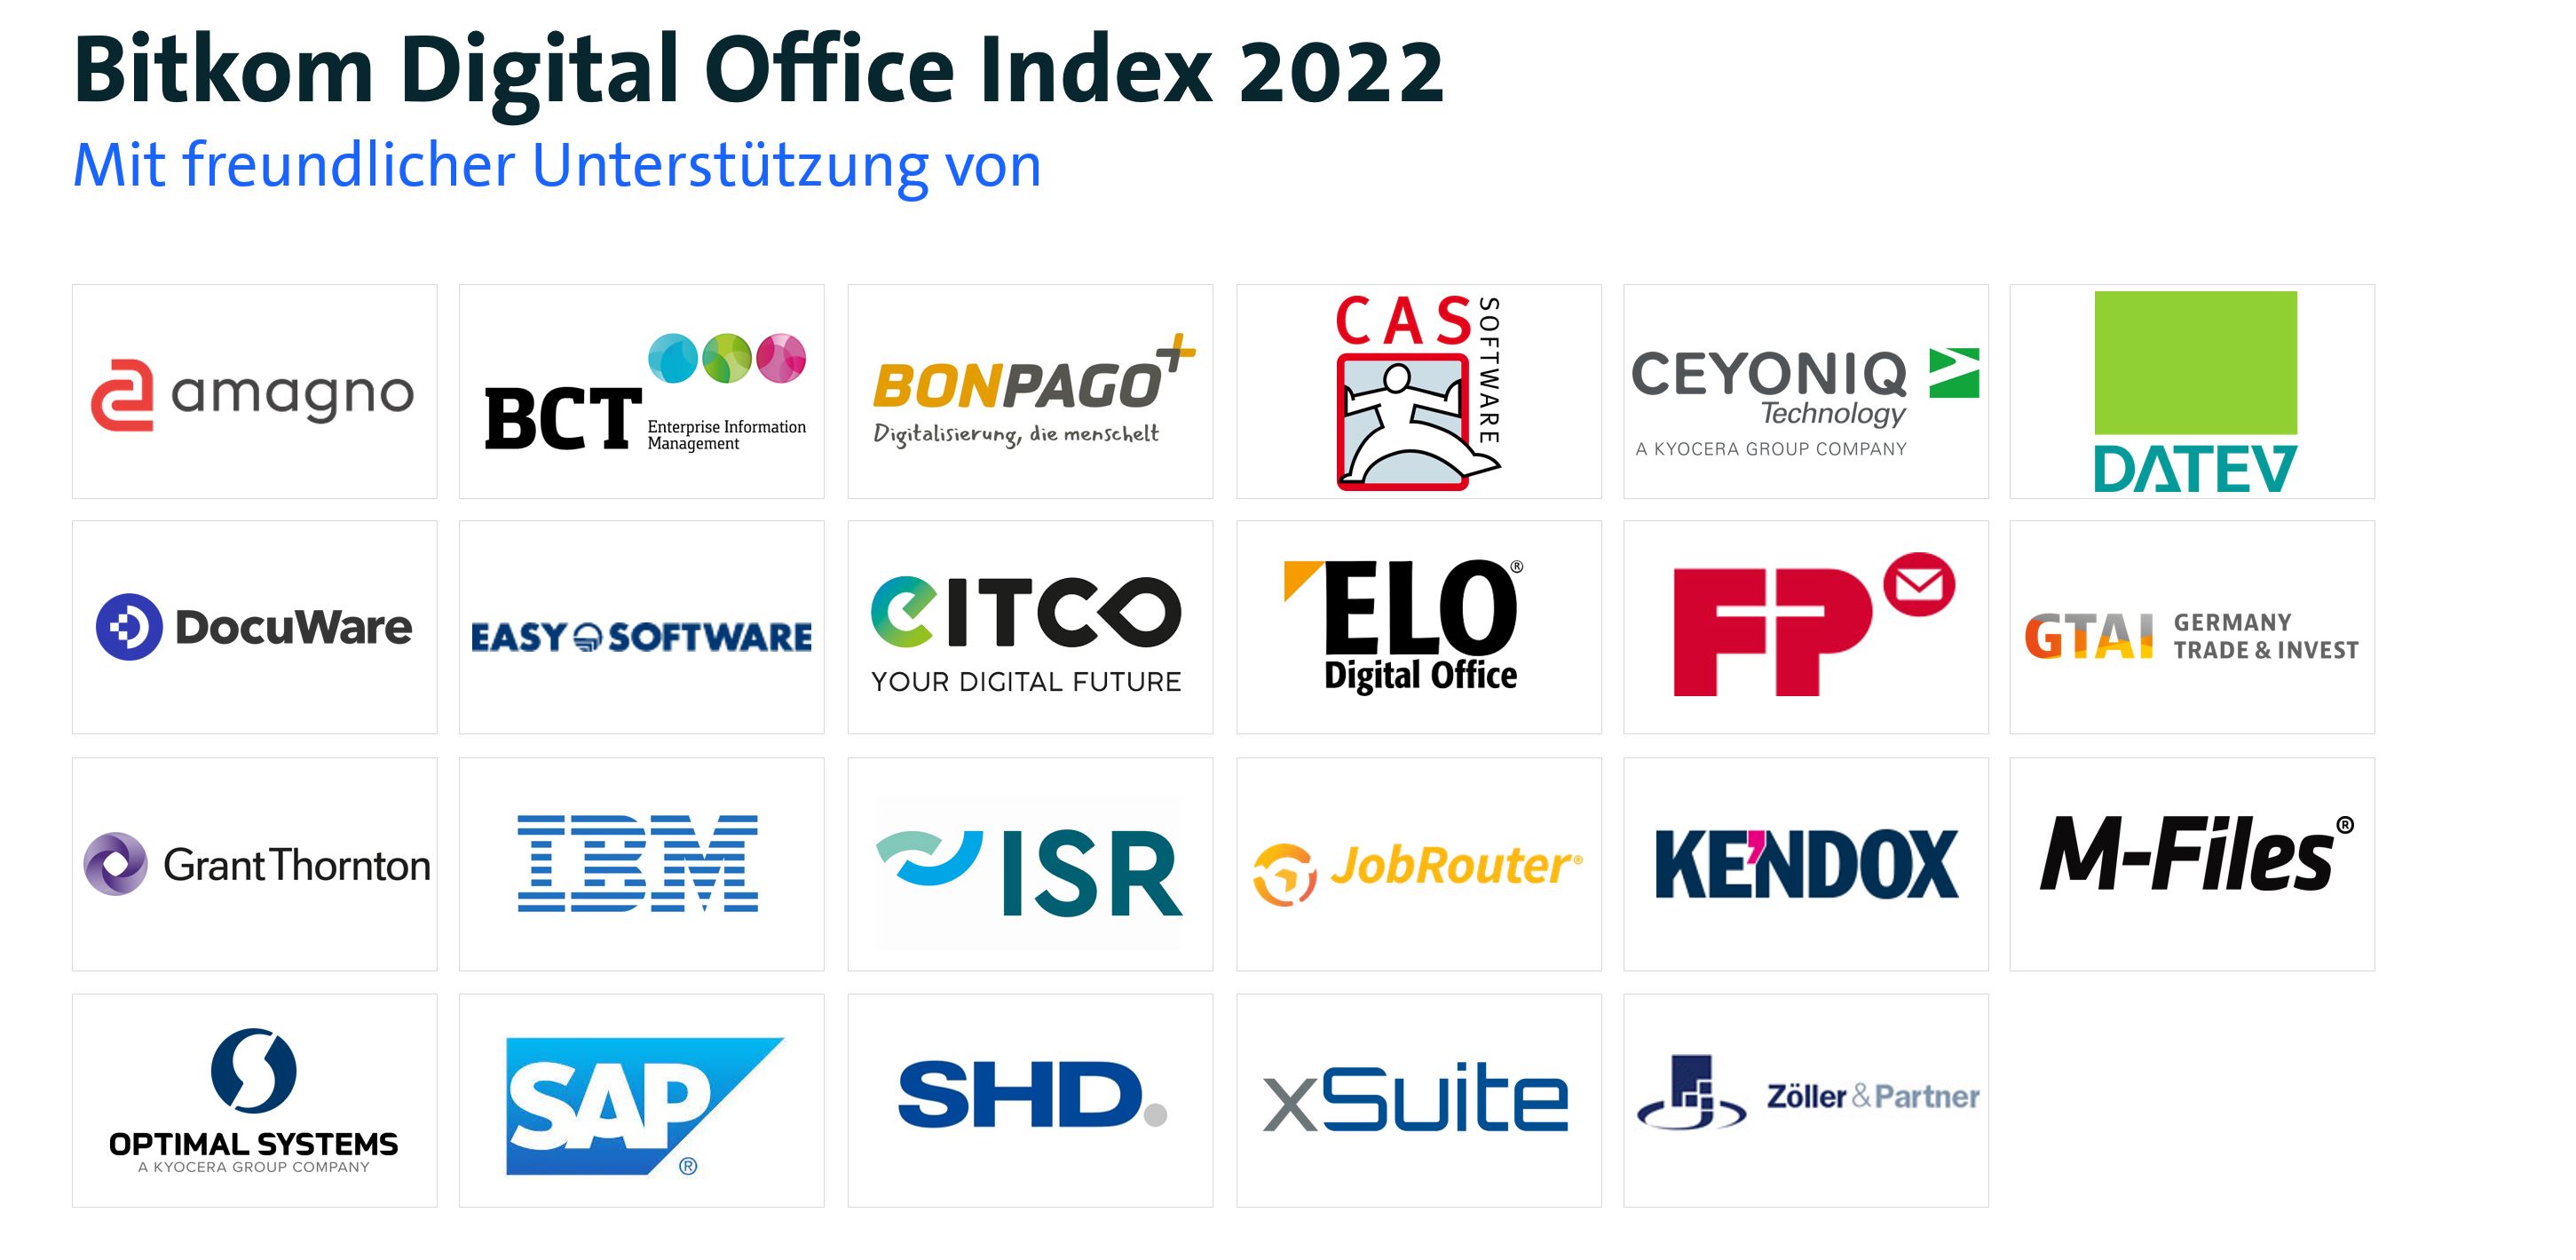 Sponsorentafel des Digital Office Index 2022